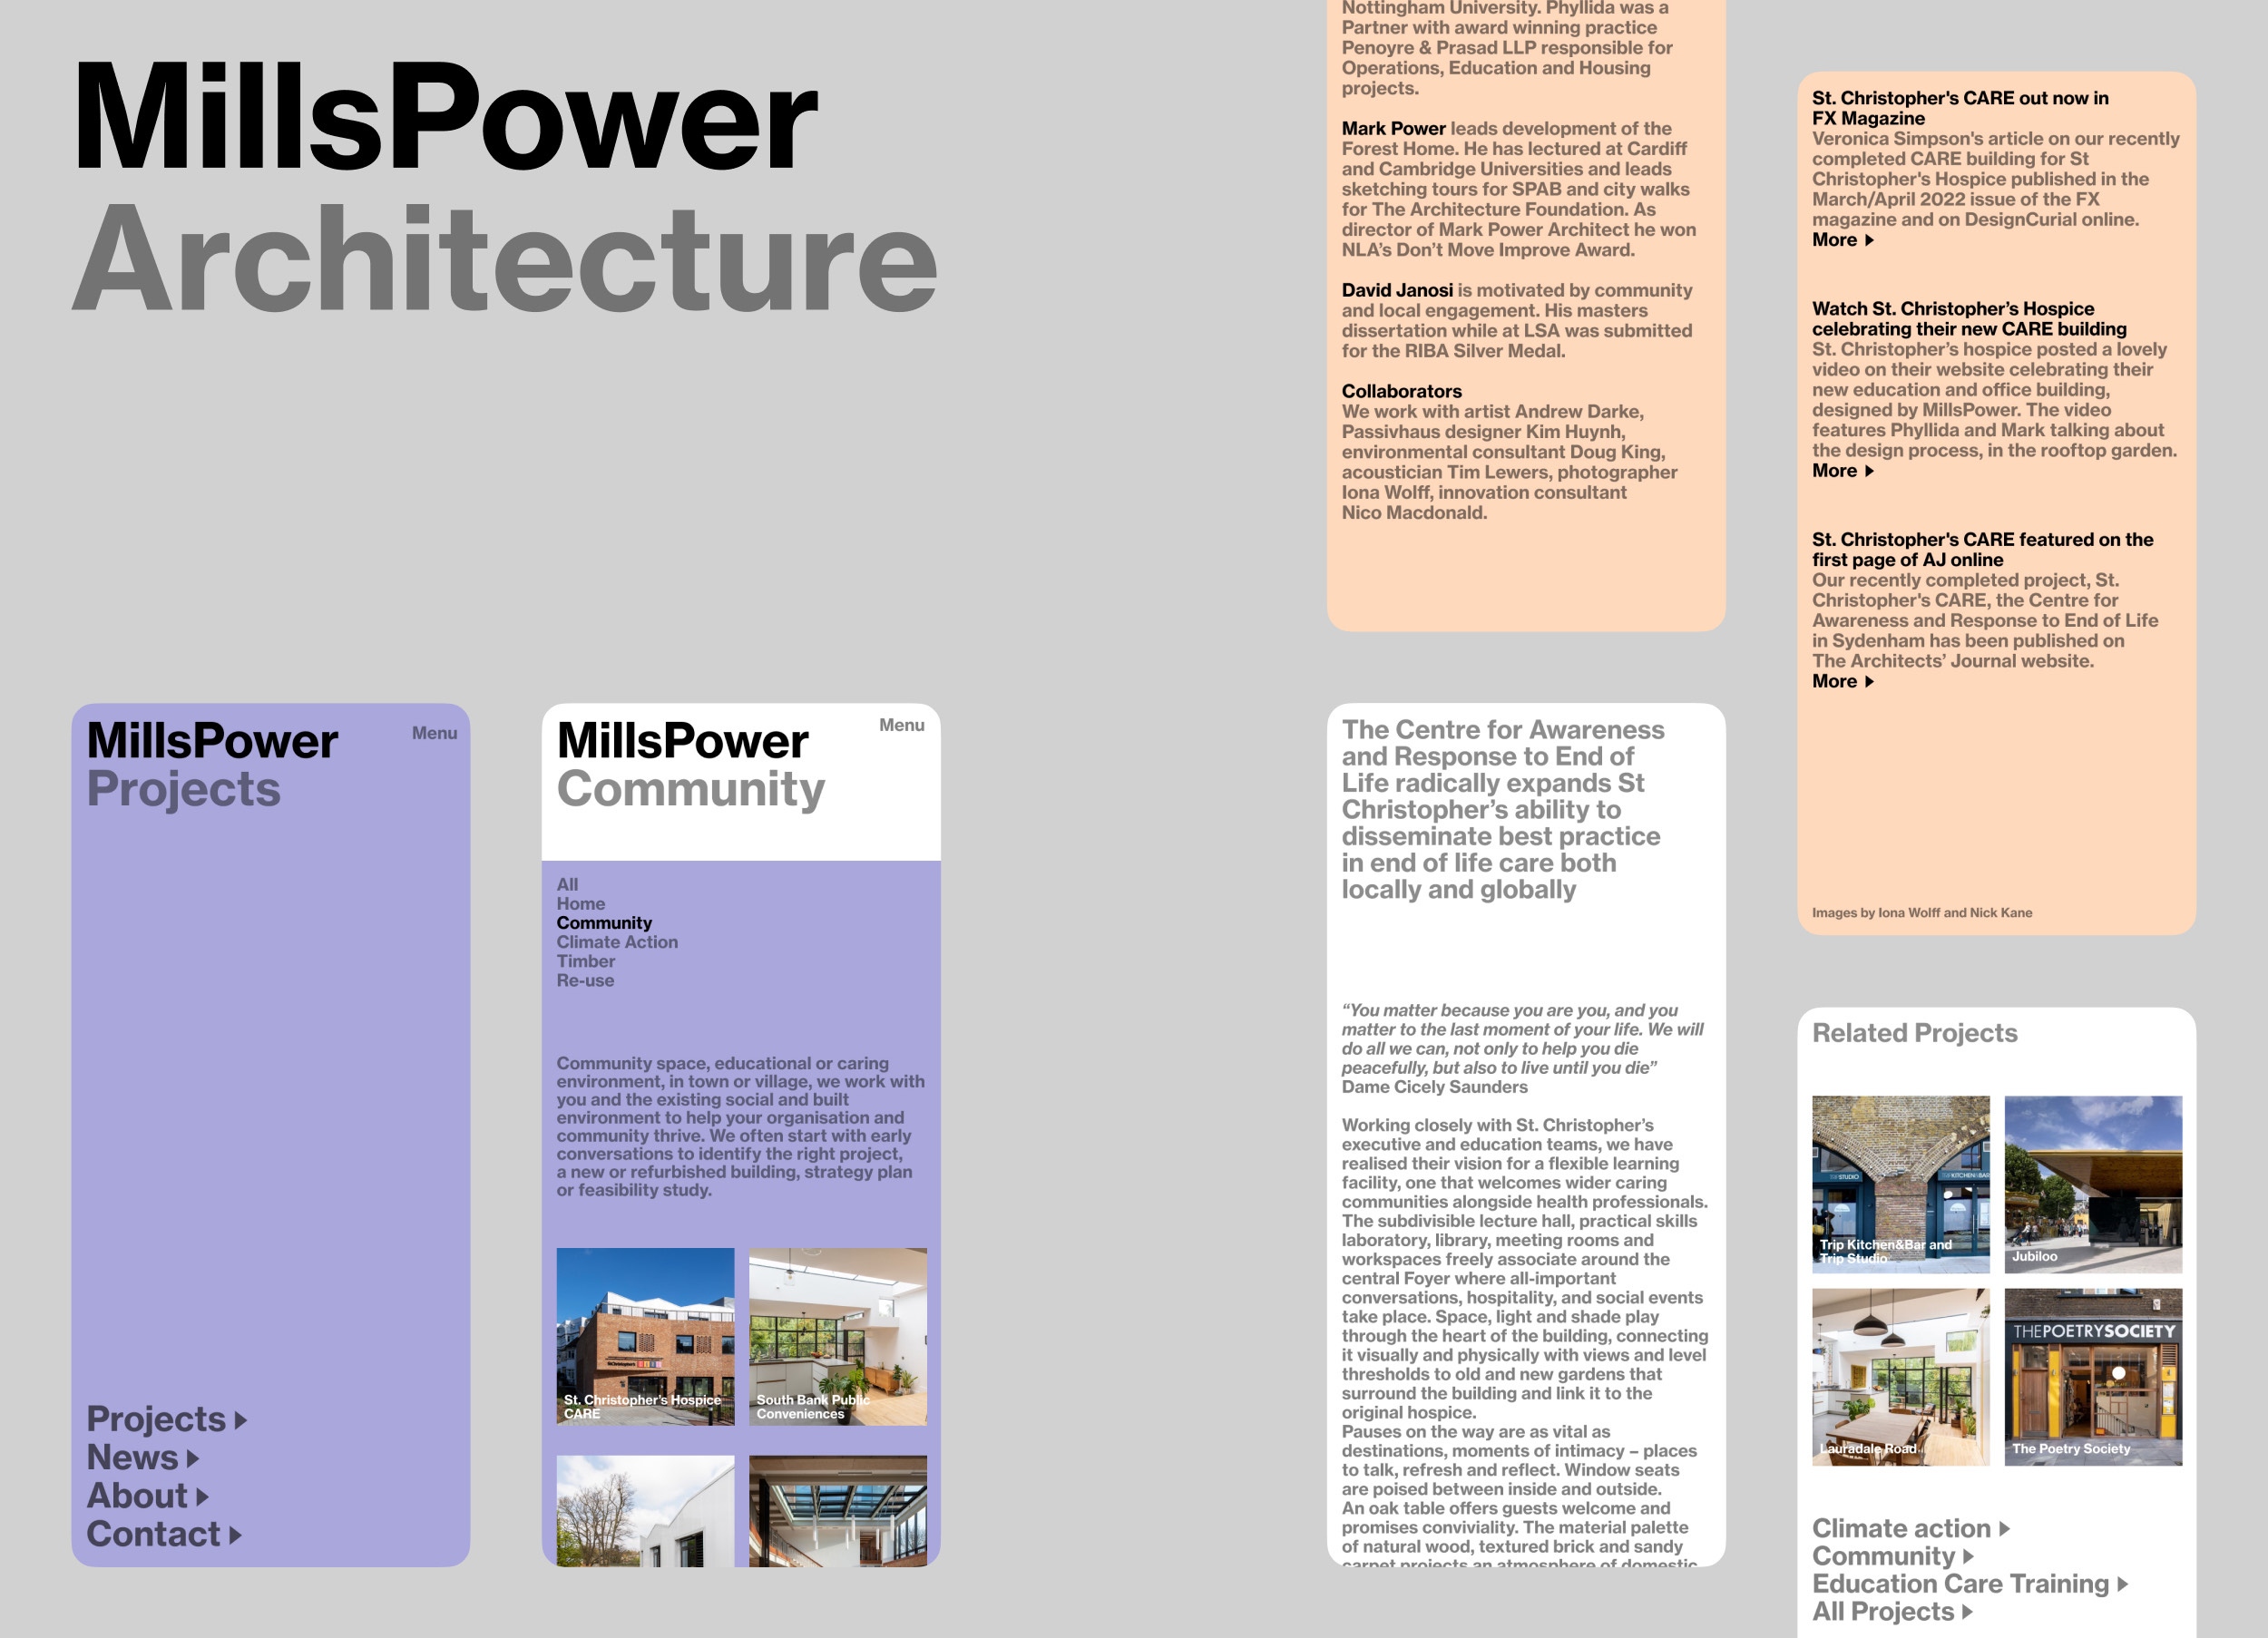 MillsPower Architecture, 2022